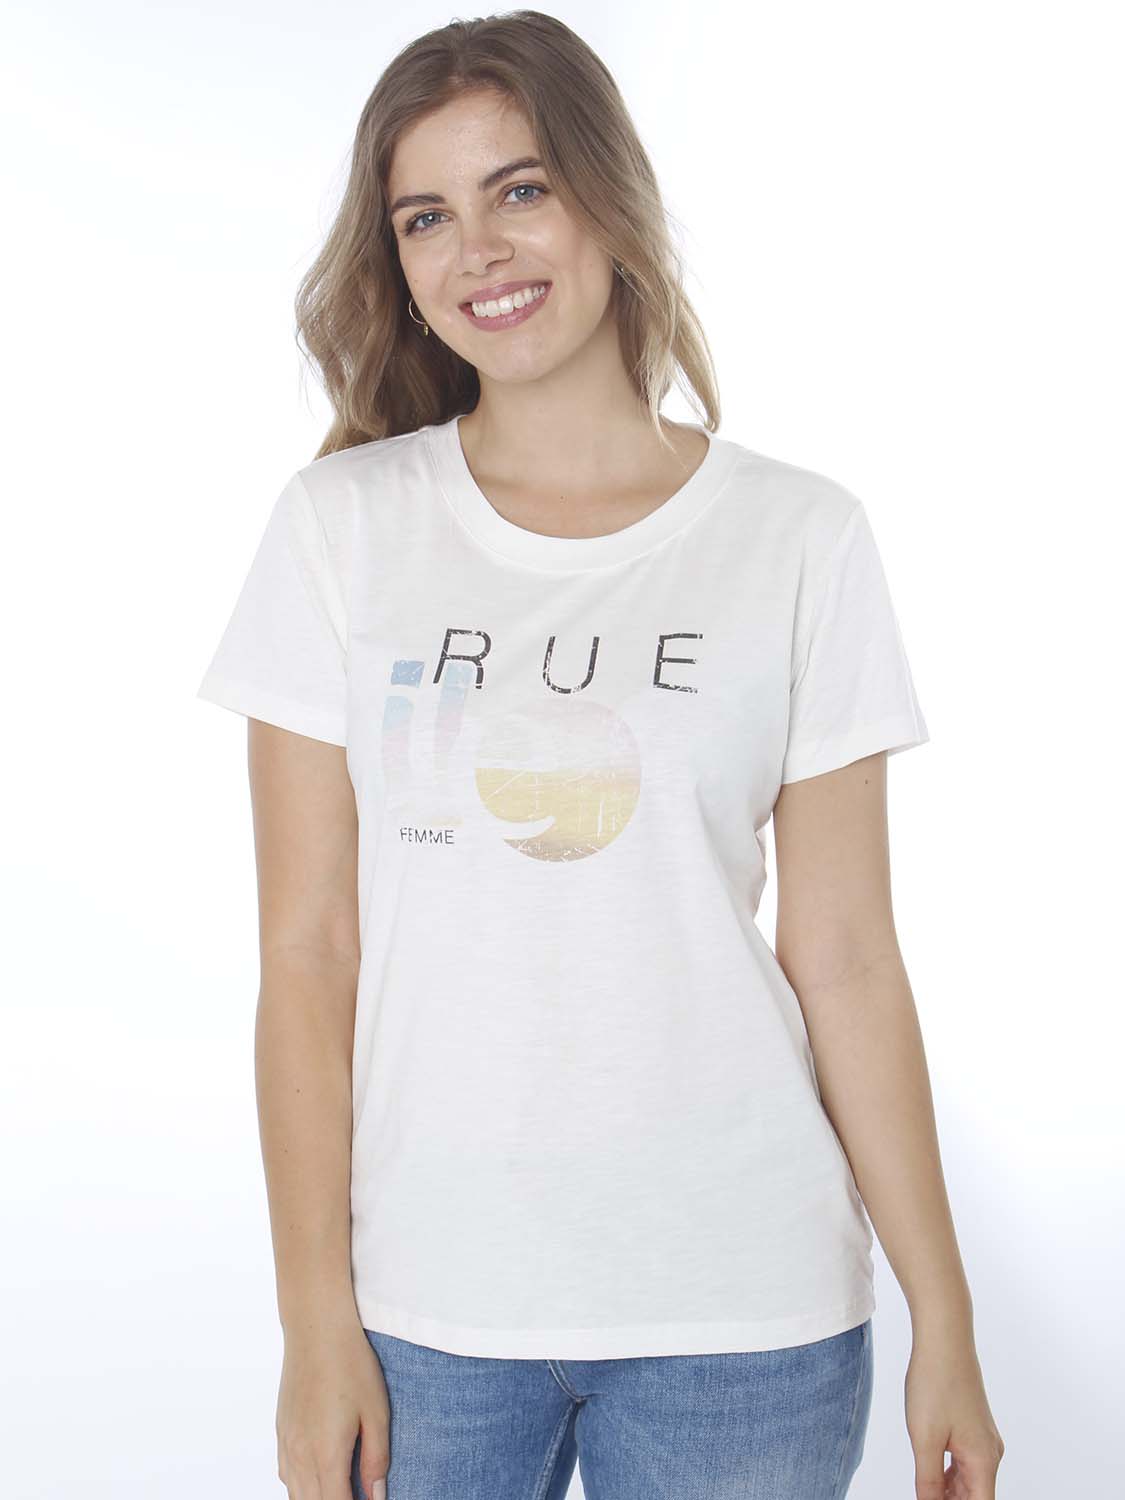 Rue de Femme T-Shirt - "Rue art tee col.2" | Tayler Fashion